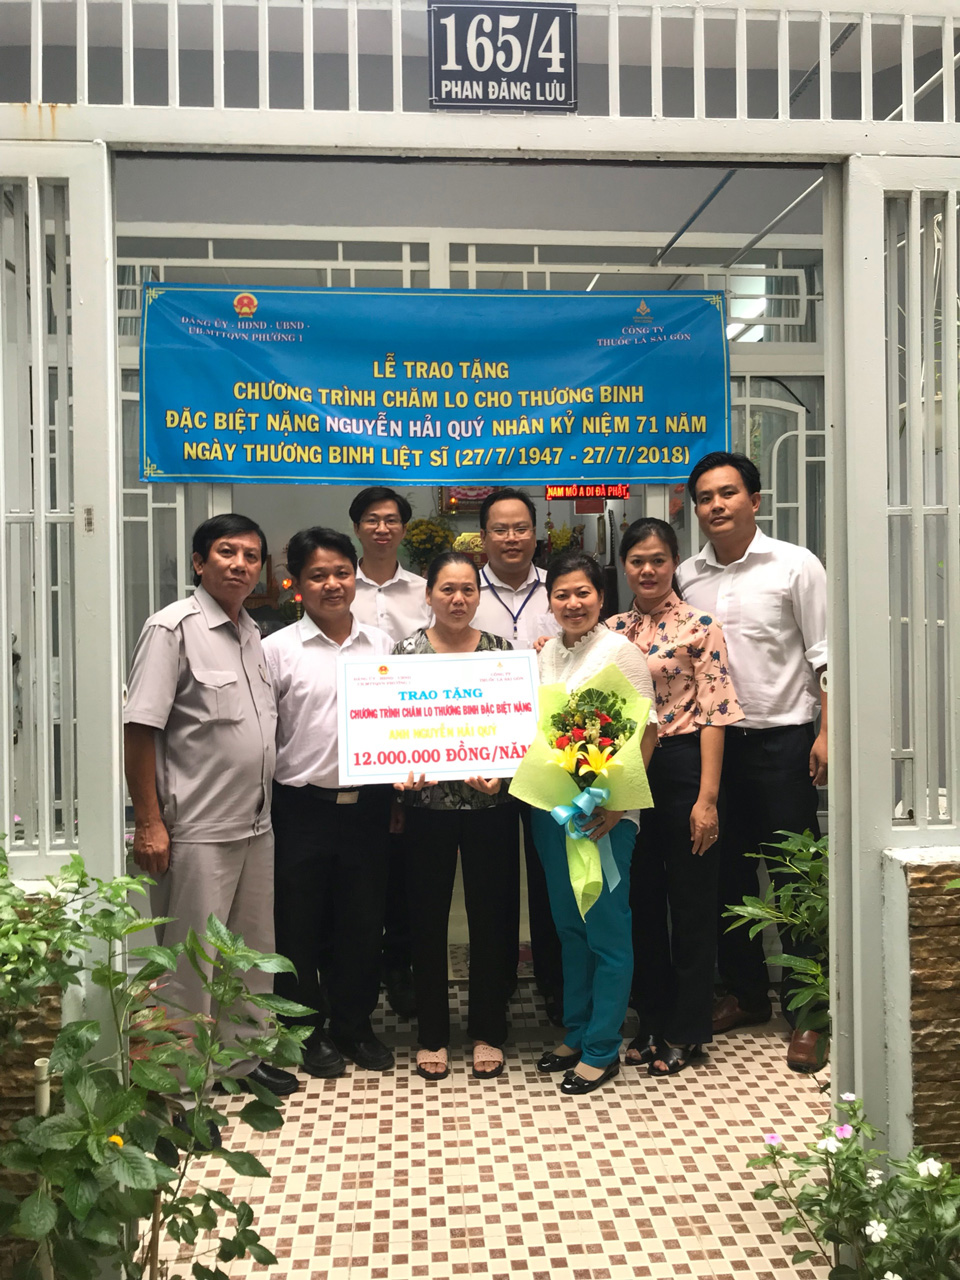 Đoàn Công ty Thuốc lá Sài Gòn đến thăm và trao tặng chương trình chăm lo cho thương binh Nguyễn Hải Quý  